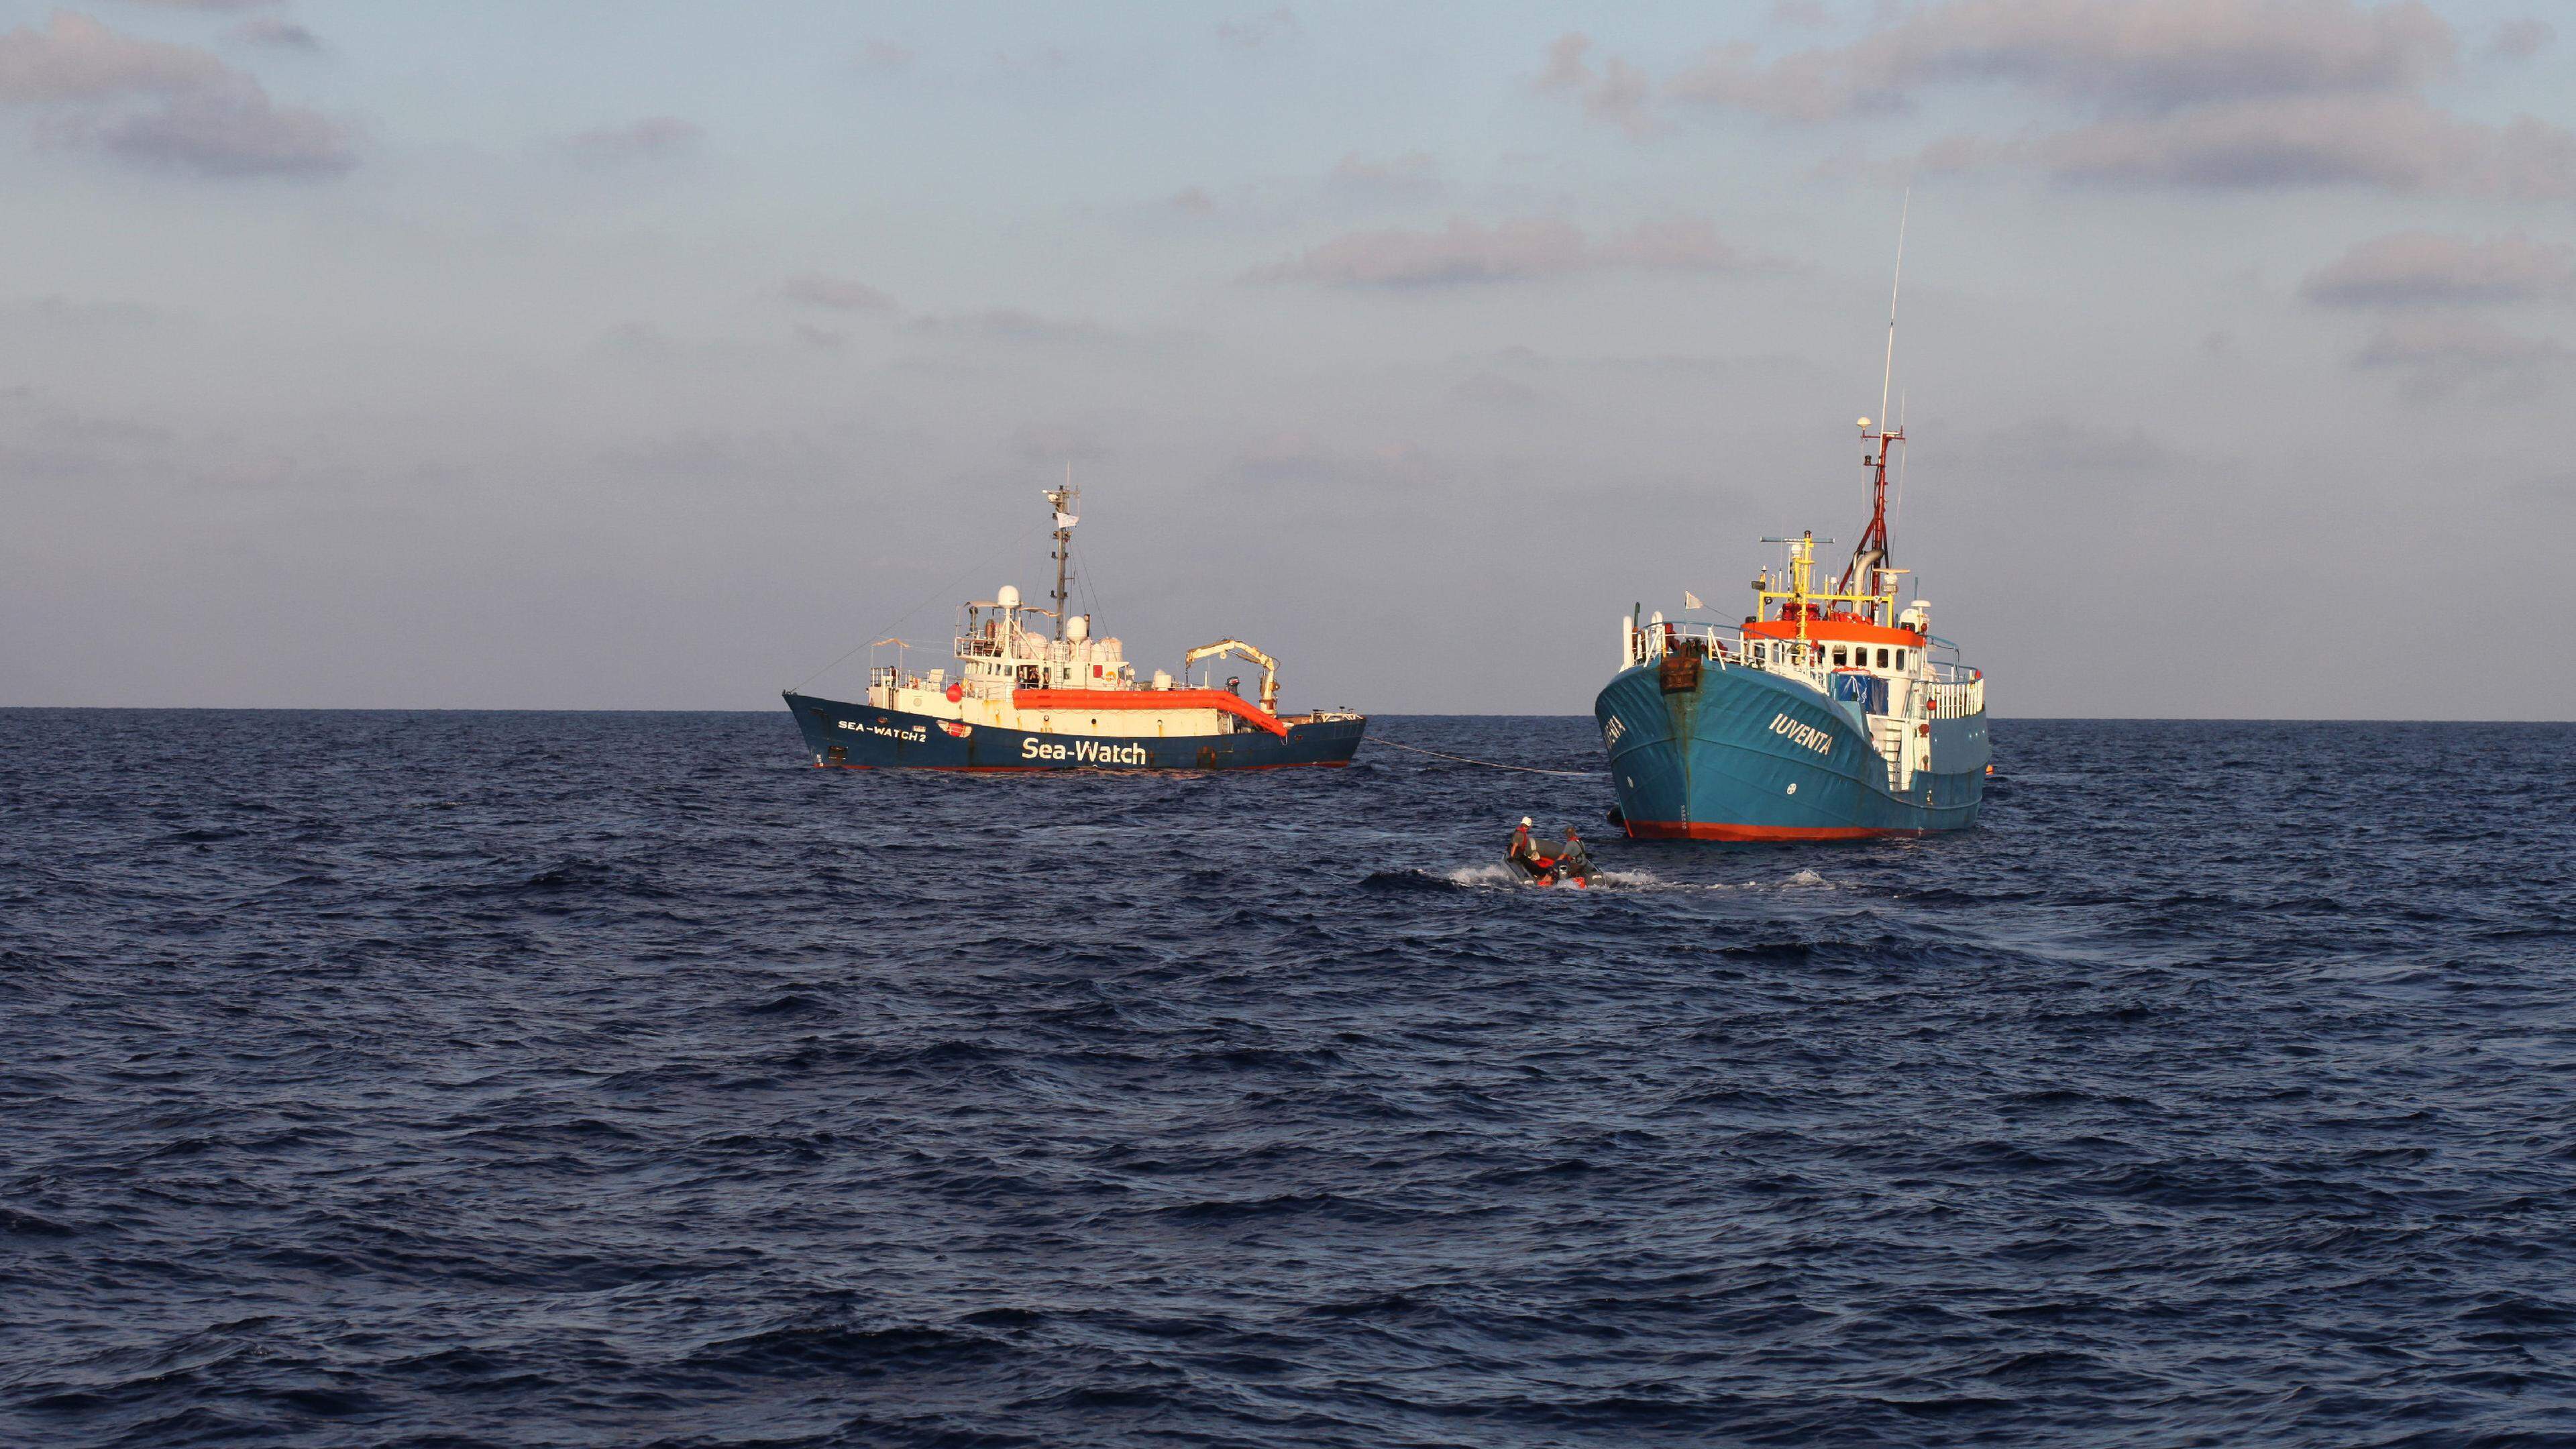 Zivile Seenotrettung von Bootsflüchtlingen im Mittelmeer vor Libyen. Hier: Die Schiffe 'SEA-WATCH 2' der deutschen NGO 'Sea Watch' und 'Iuventa' der NGO 'Jugend rettet' auf hoher See.